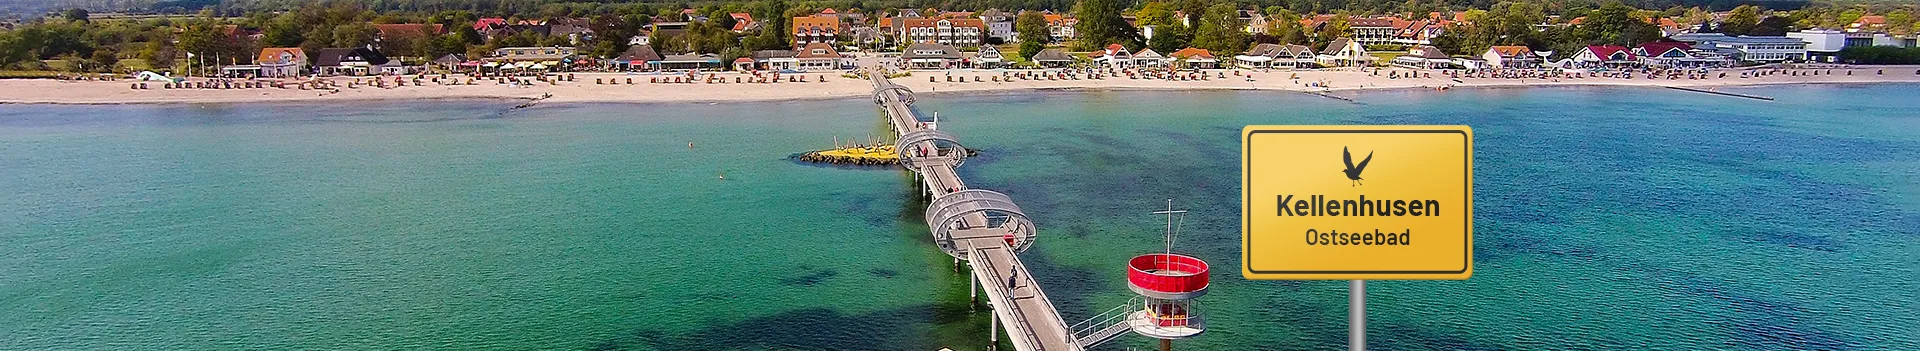 Ostseebad Kellenhusen – Seebrücke und Strand aus der Vogelperspektive